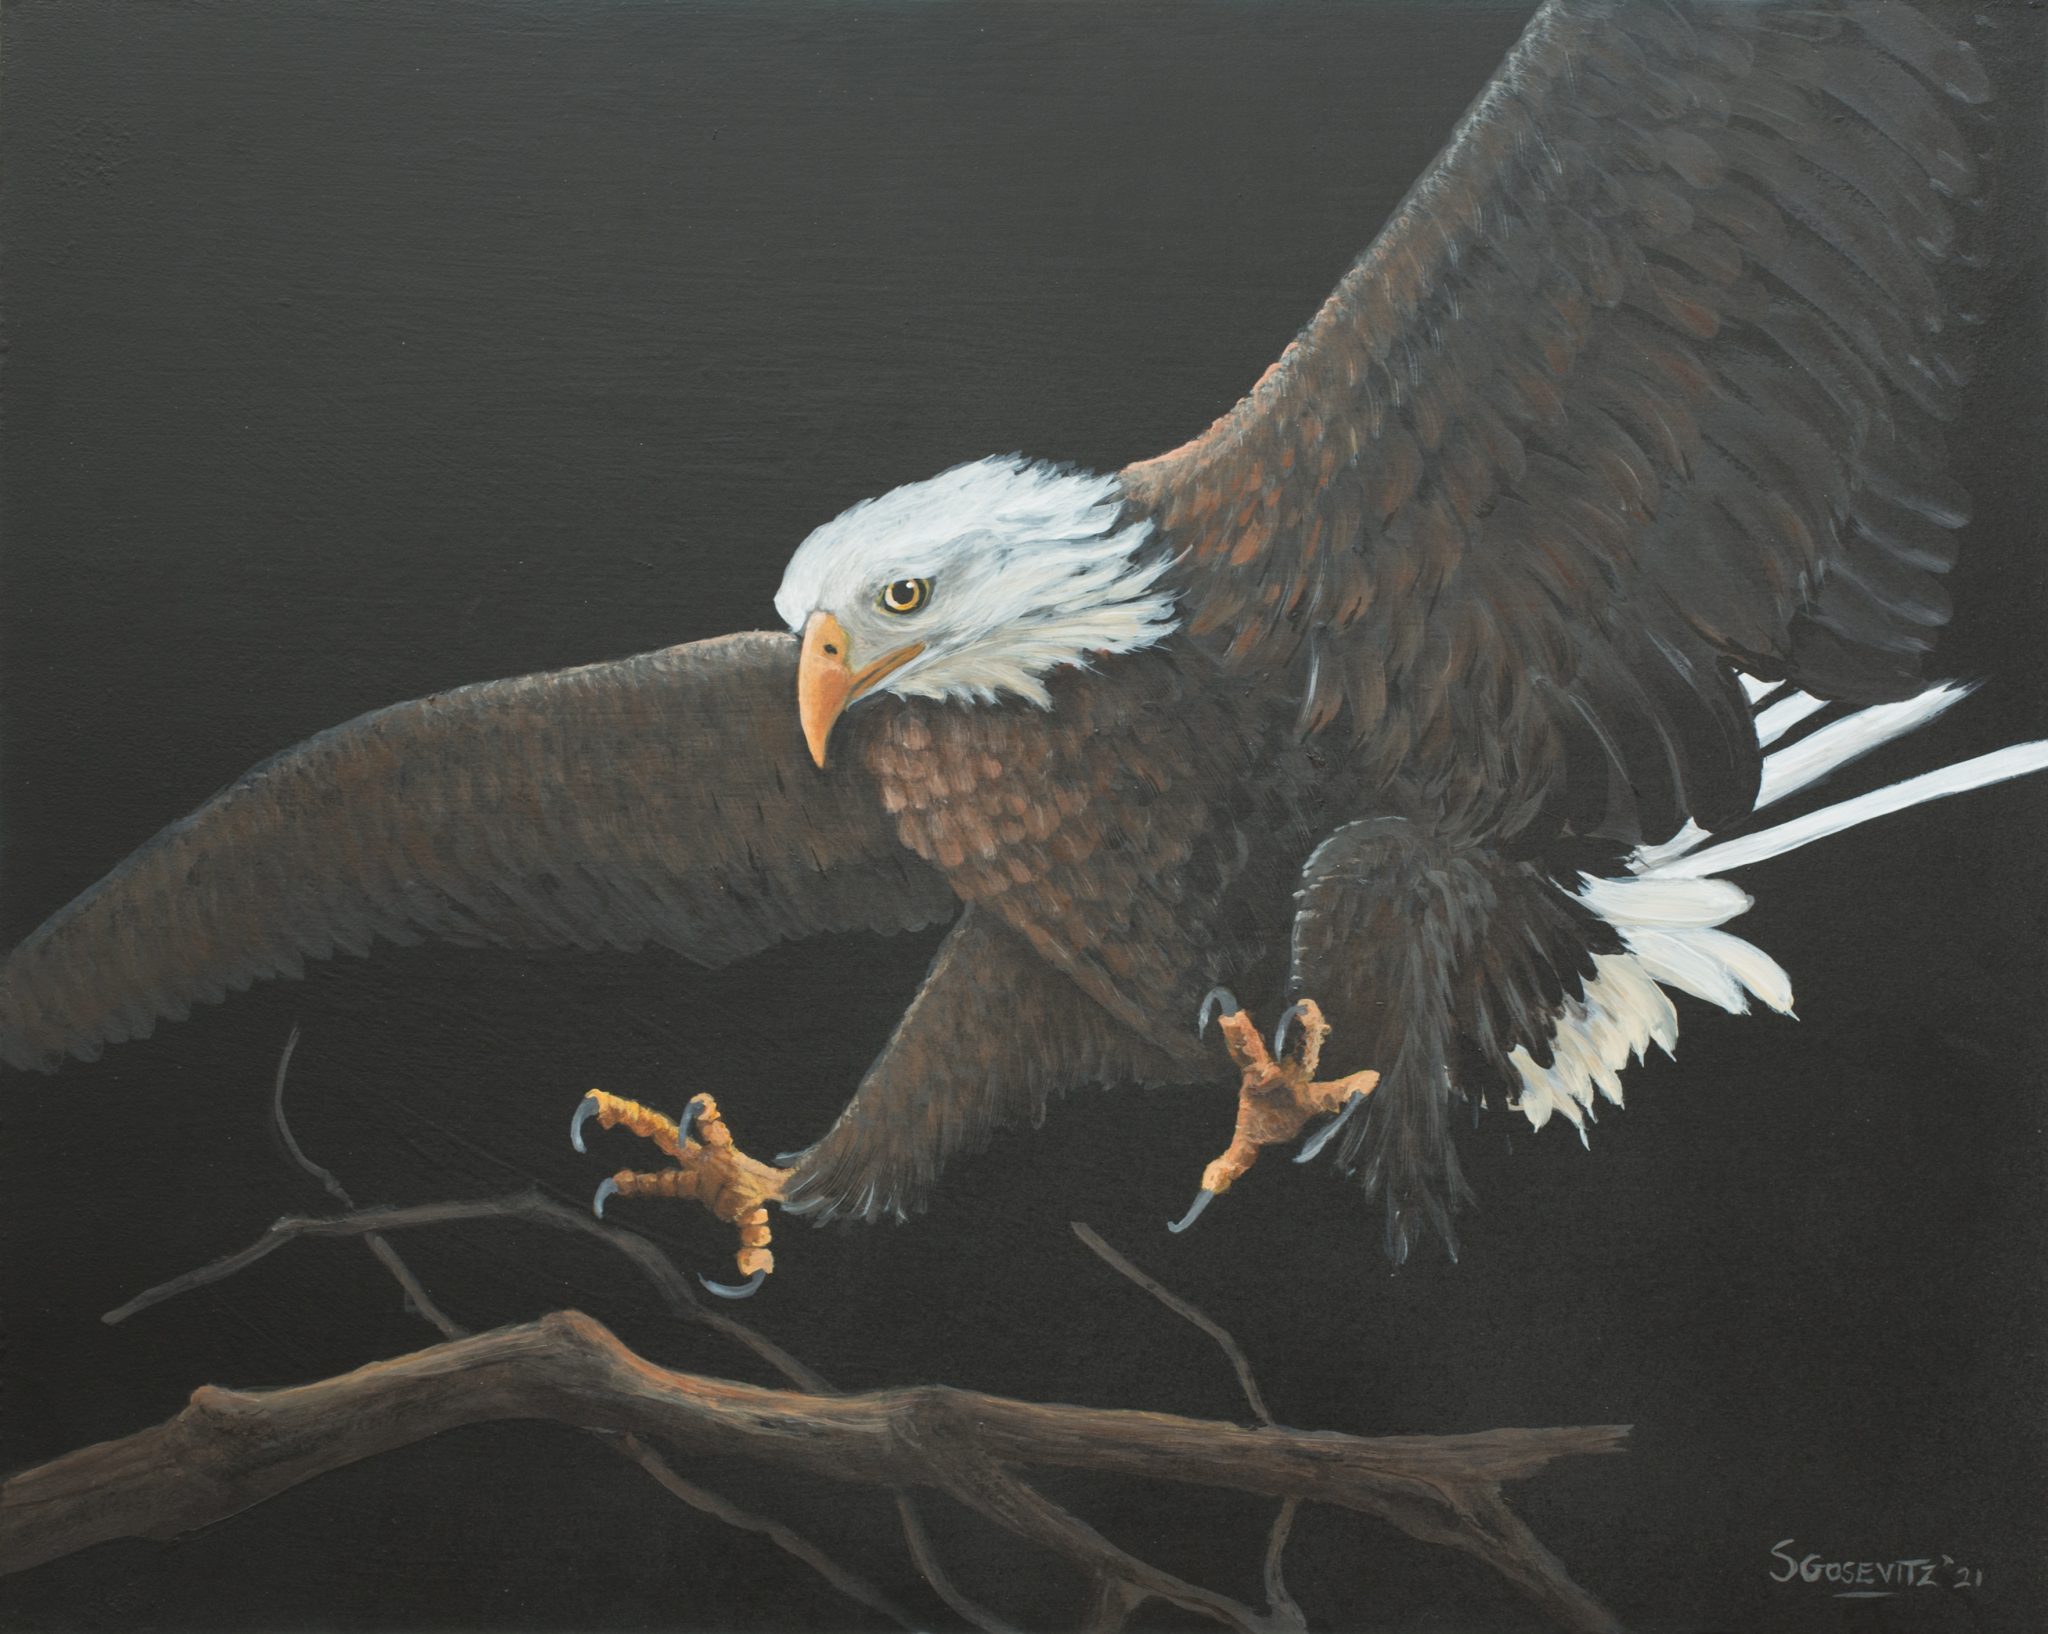 bald eagle up close landing on a branch black background